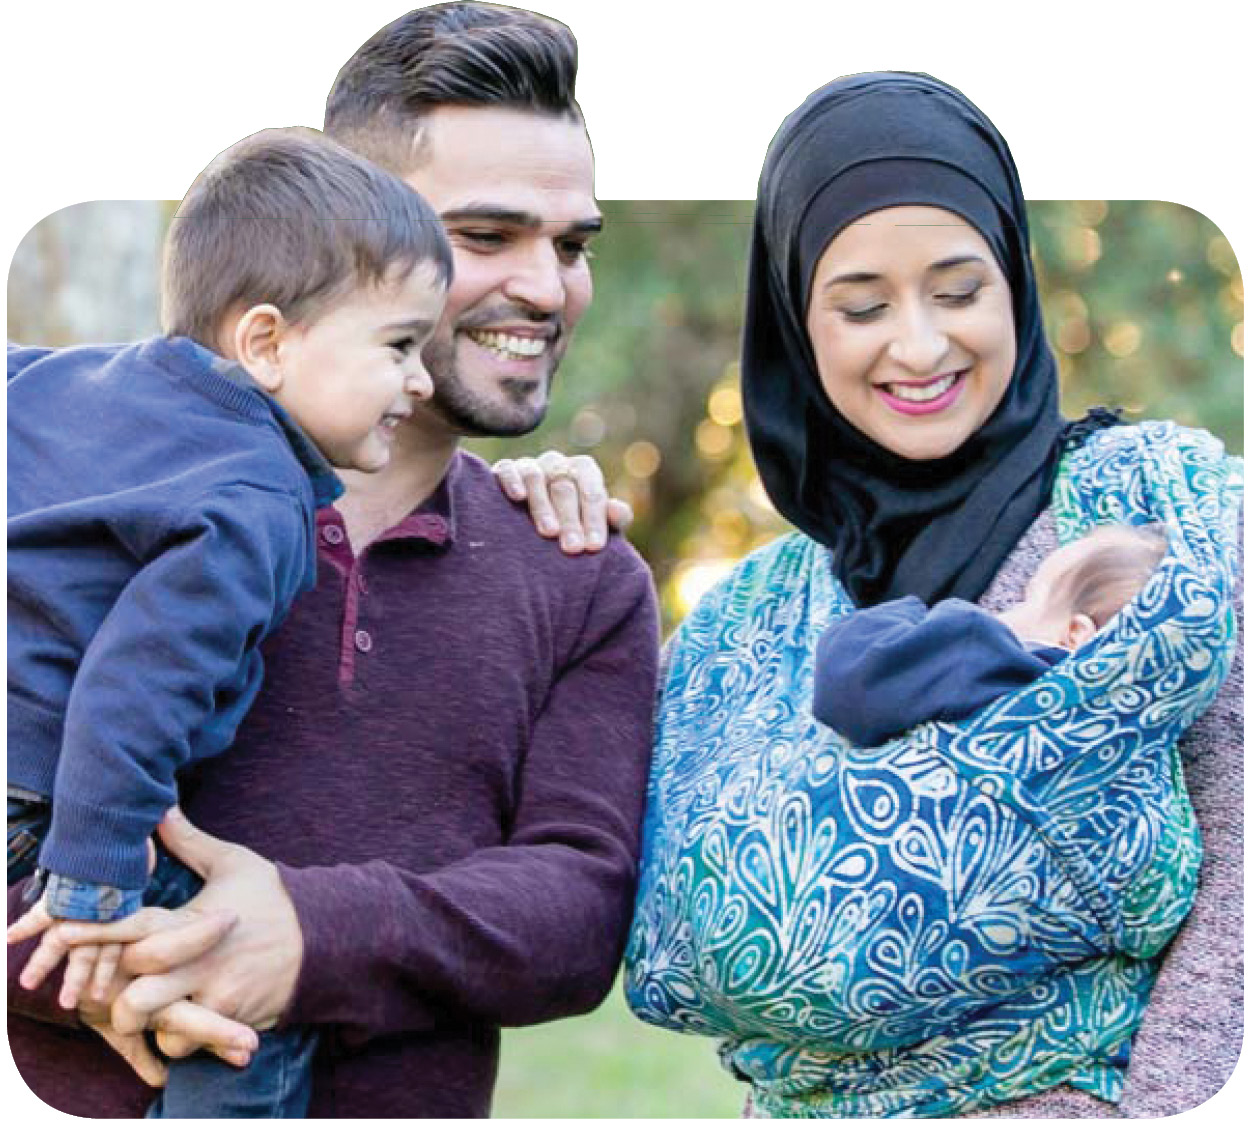 Картинка мусульманская жена. Мусульманская семья. Мусульманская семья с детьми. Мусульманка с ребенком. Счастливая мусульманская семья с детьми.